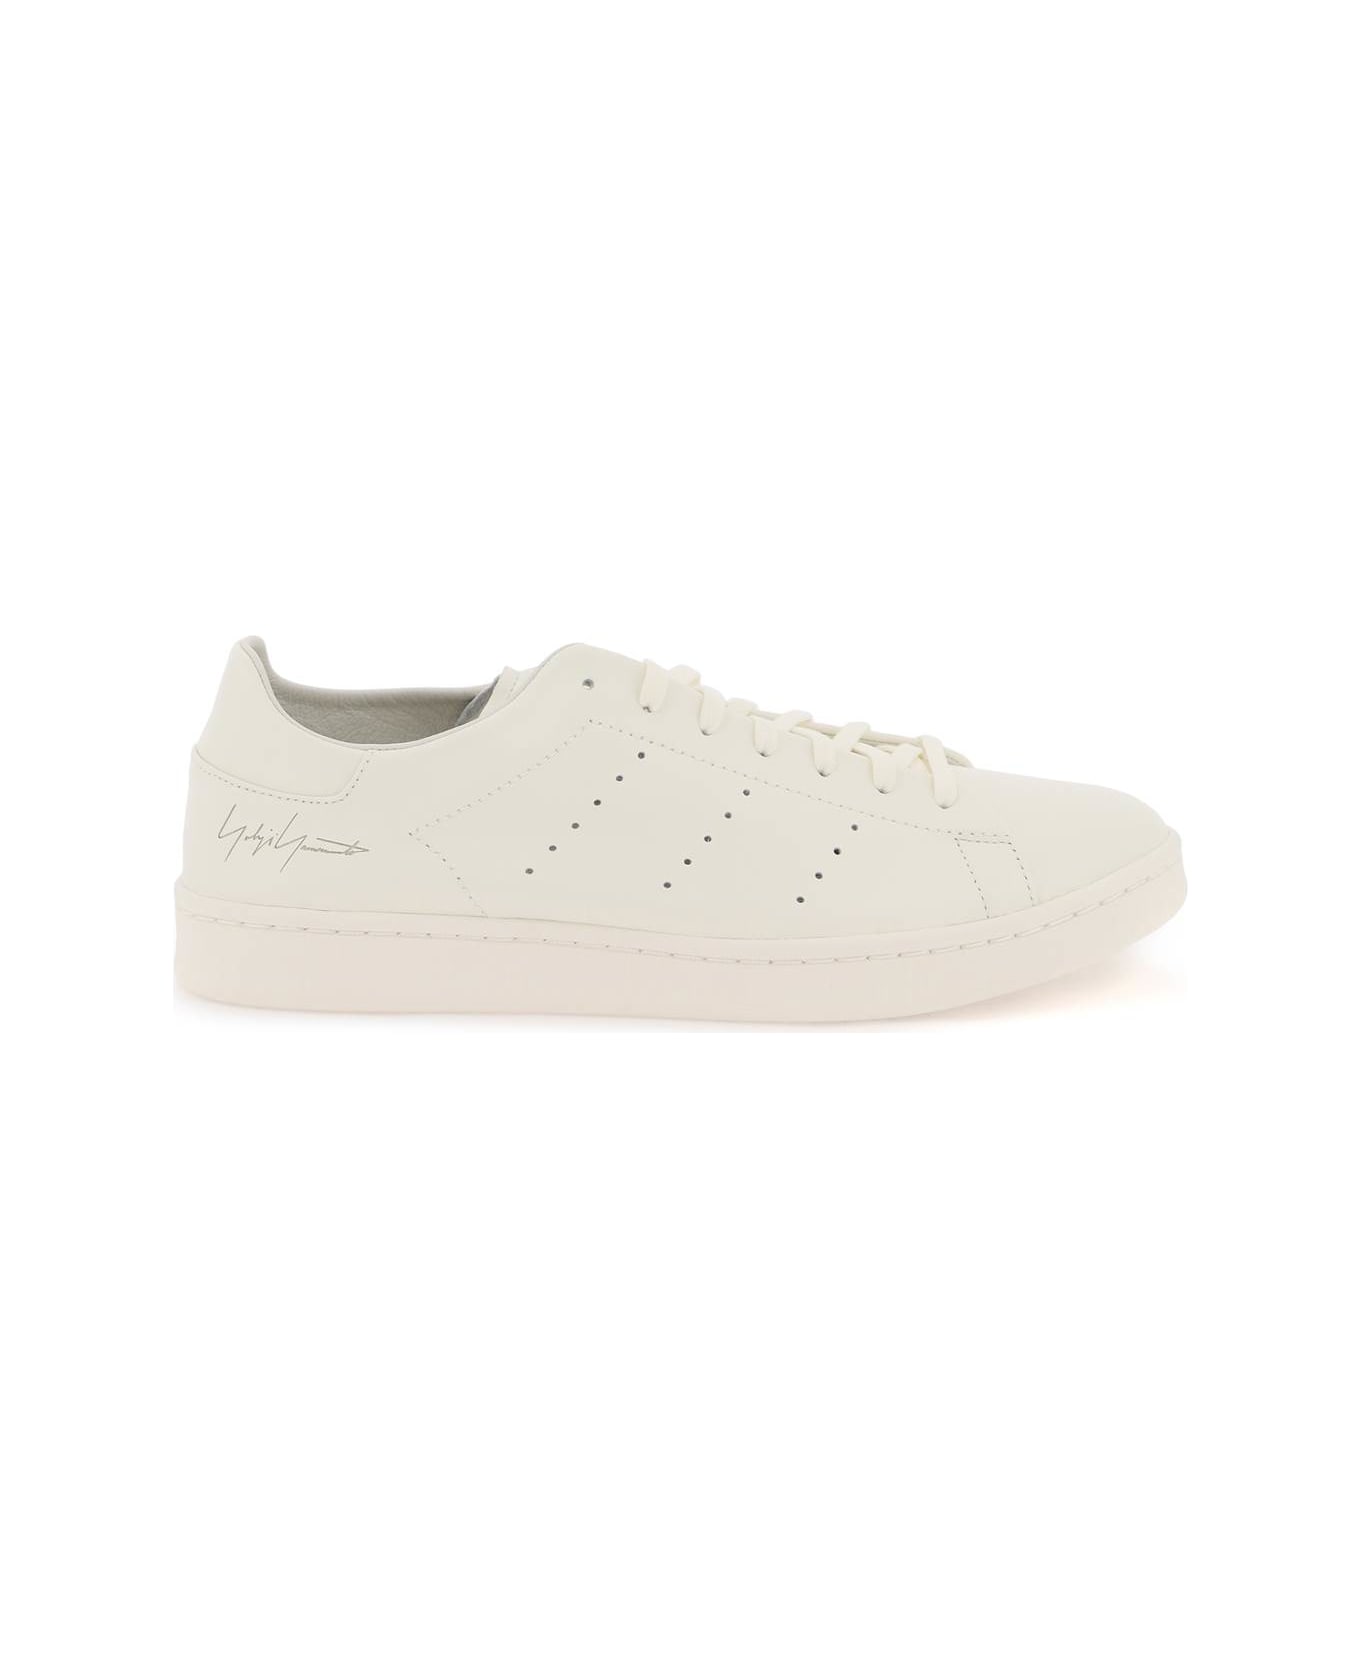 Y-3 Stan Smith Sneakers - OWHITE OWHITE OWHITE (White)